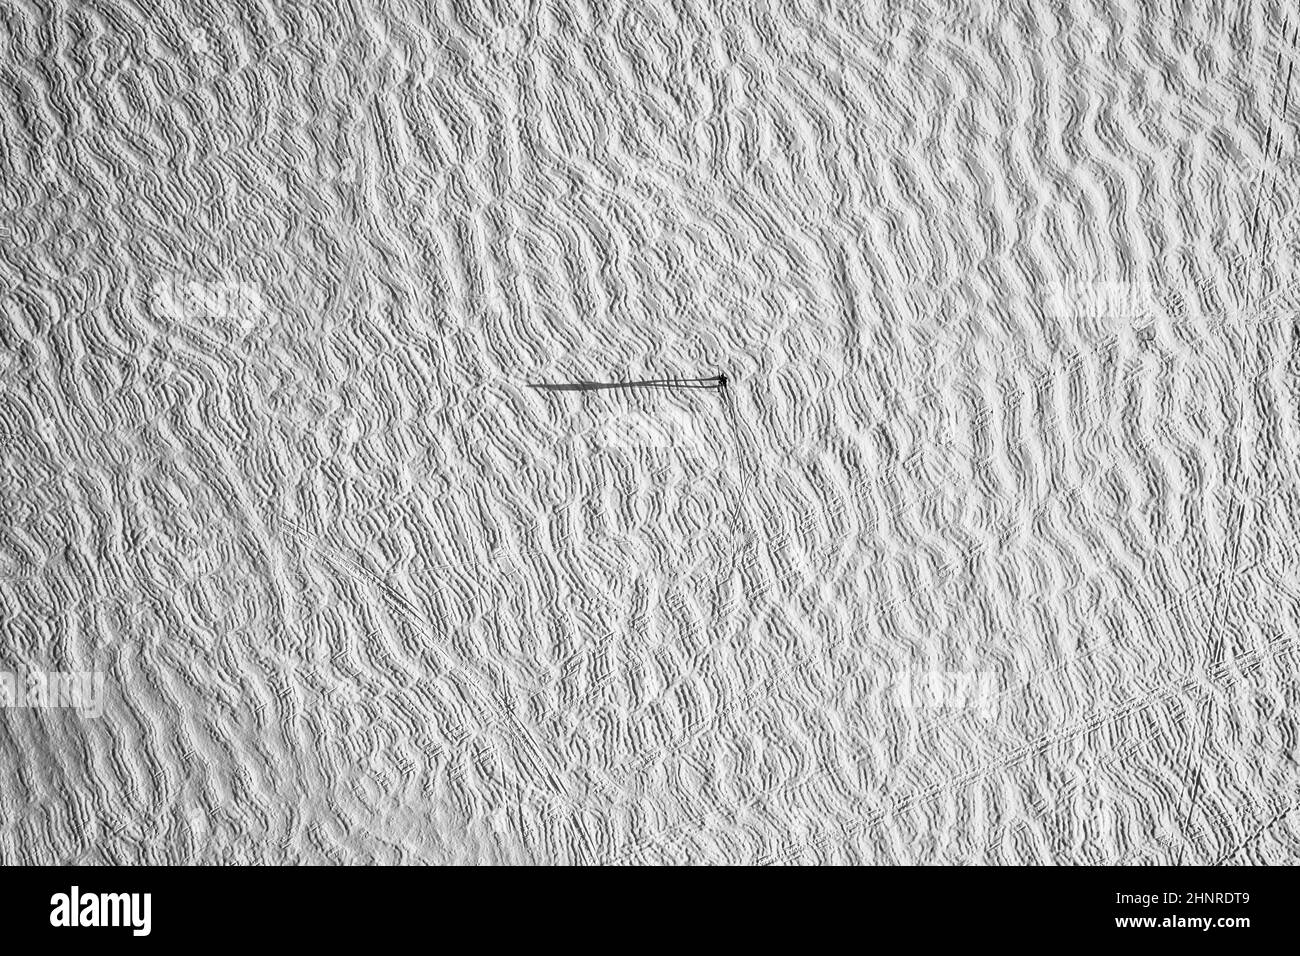 Vue aérienne d'un lac gelé recouvert de neige avec une minuscule silhouette et une ombre Banque D'Images